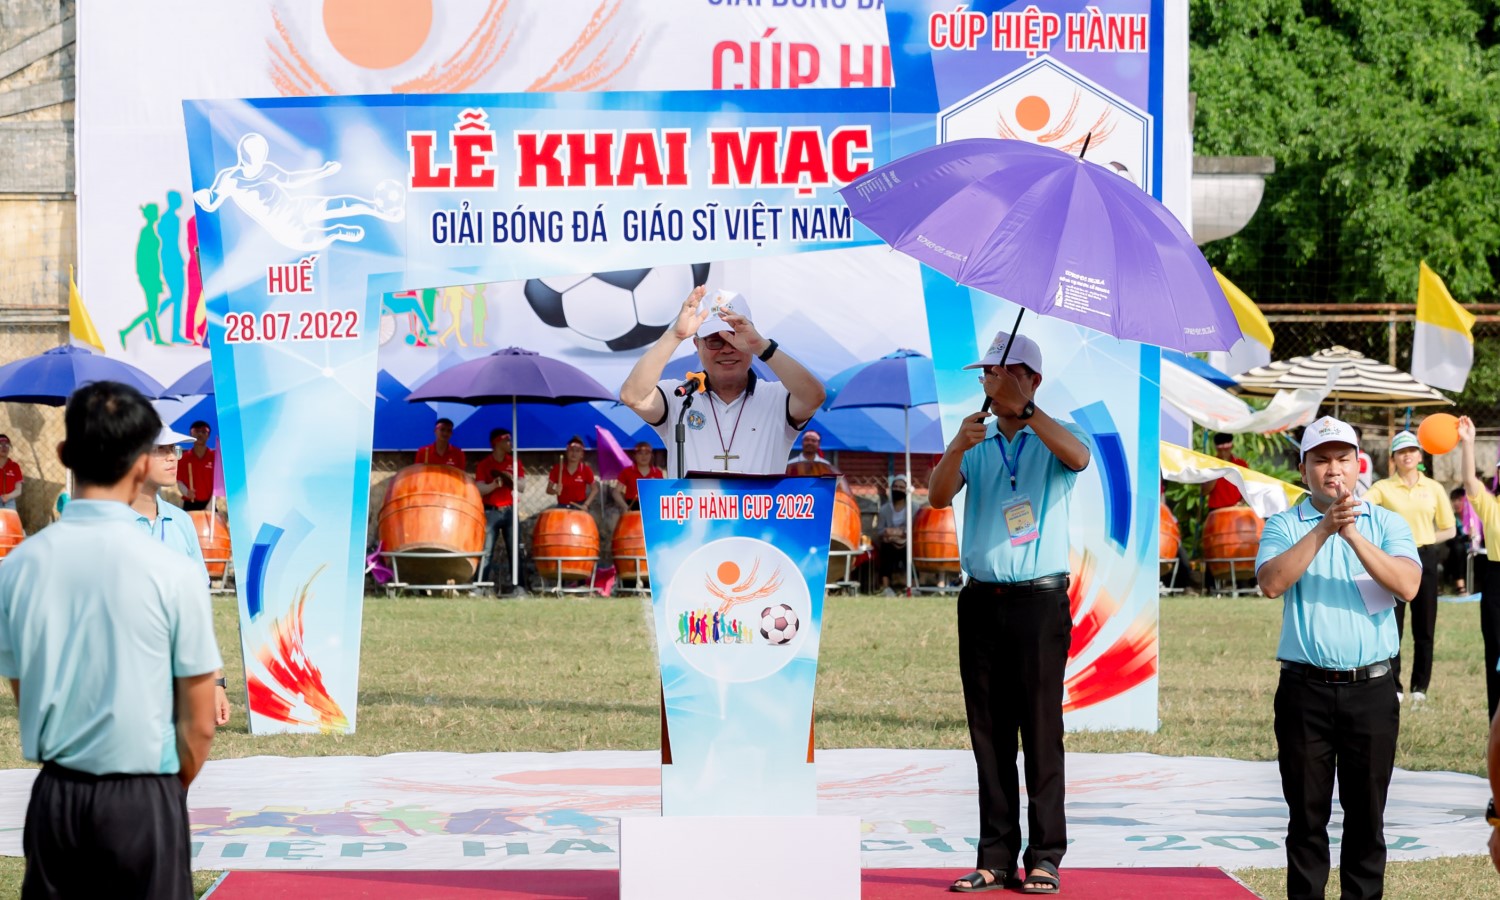 Đức cha Chủ tịch Hội đồng Giám mục Việt Nam tuyên bố khai mạc Giải bóng đá giáo sĩ toàn quốc 2022